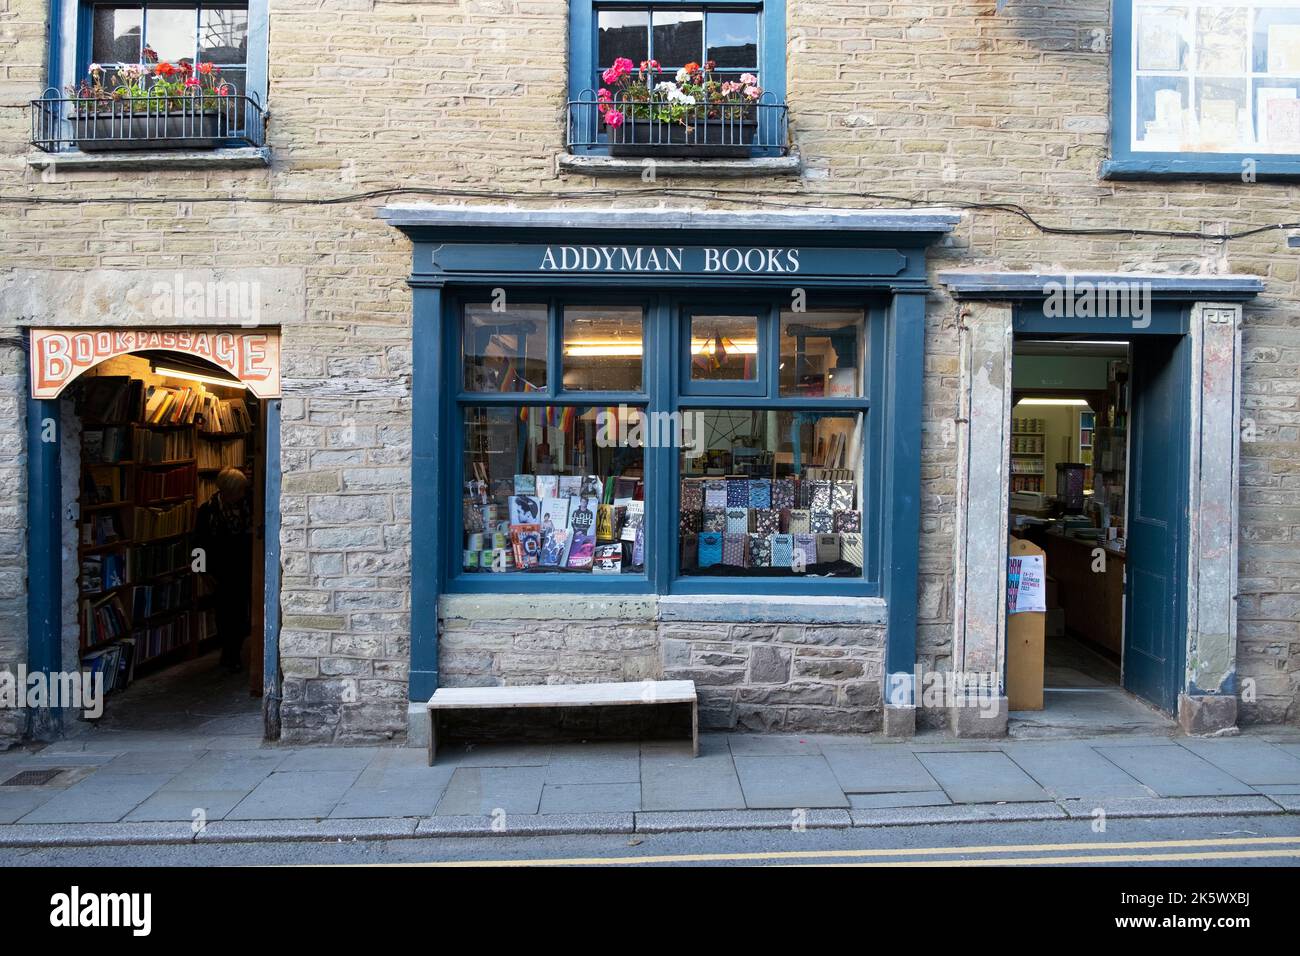 Außenansicht des Schaufensters des Addyman Books Stores am National Bookshop Day in der Buchstadt Hay-on-Wye Powys Wales Großbritannien KATHY DEWITT Stockfoto